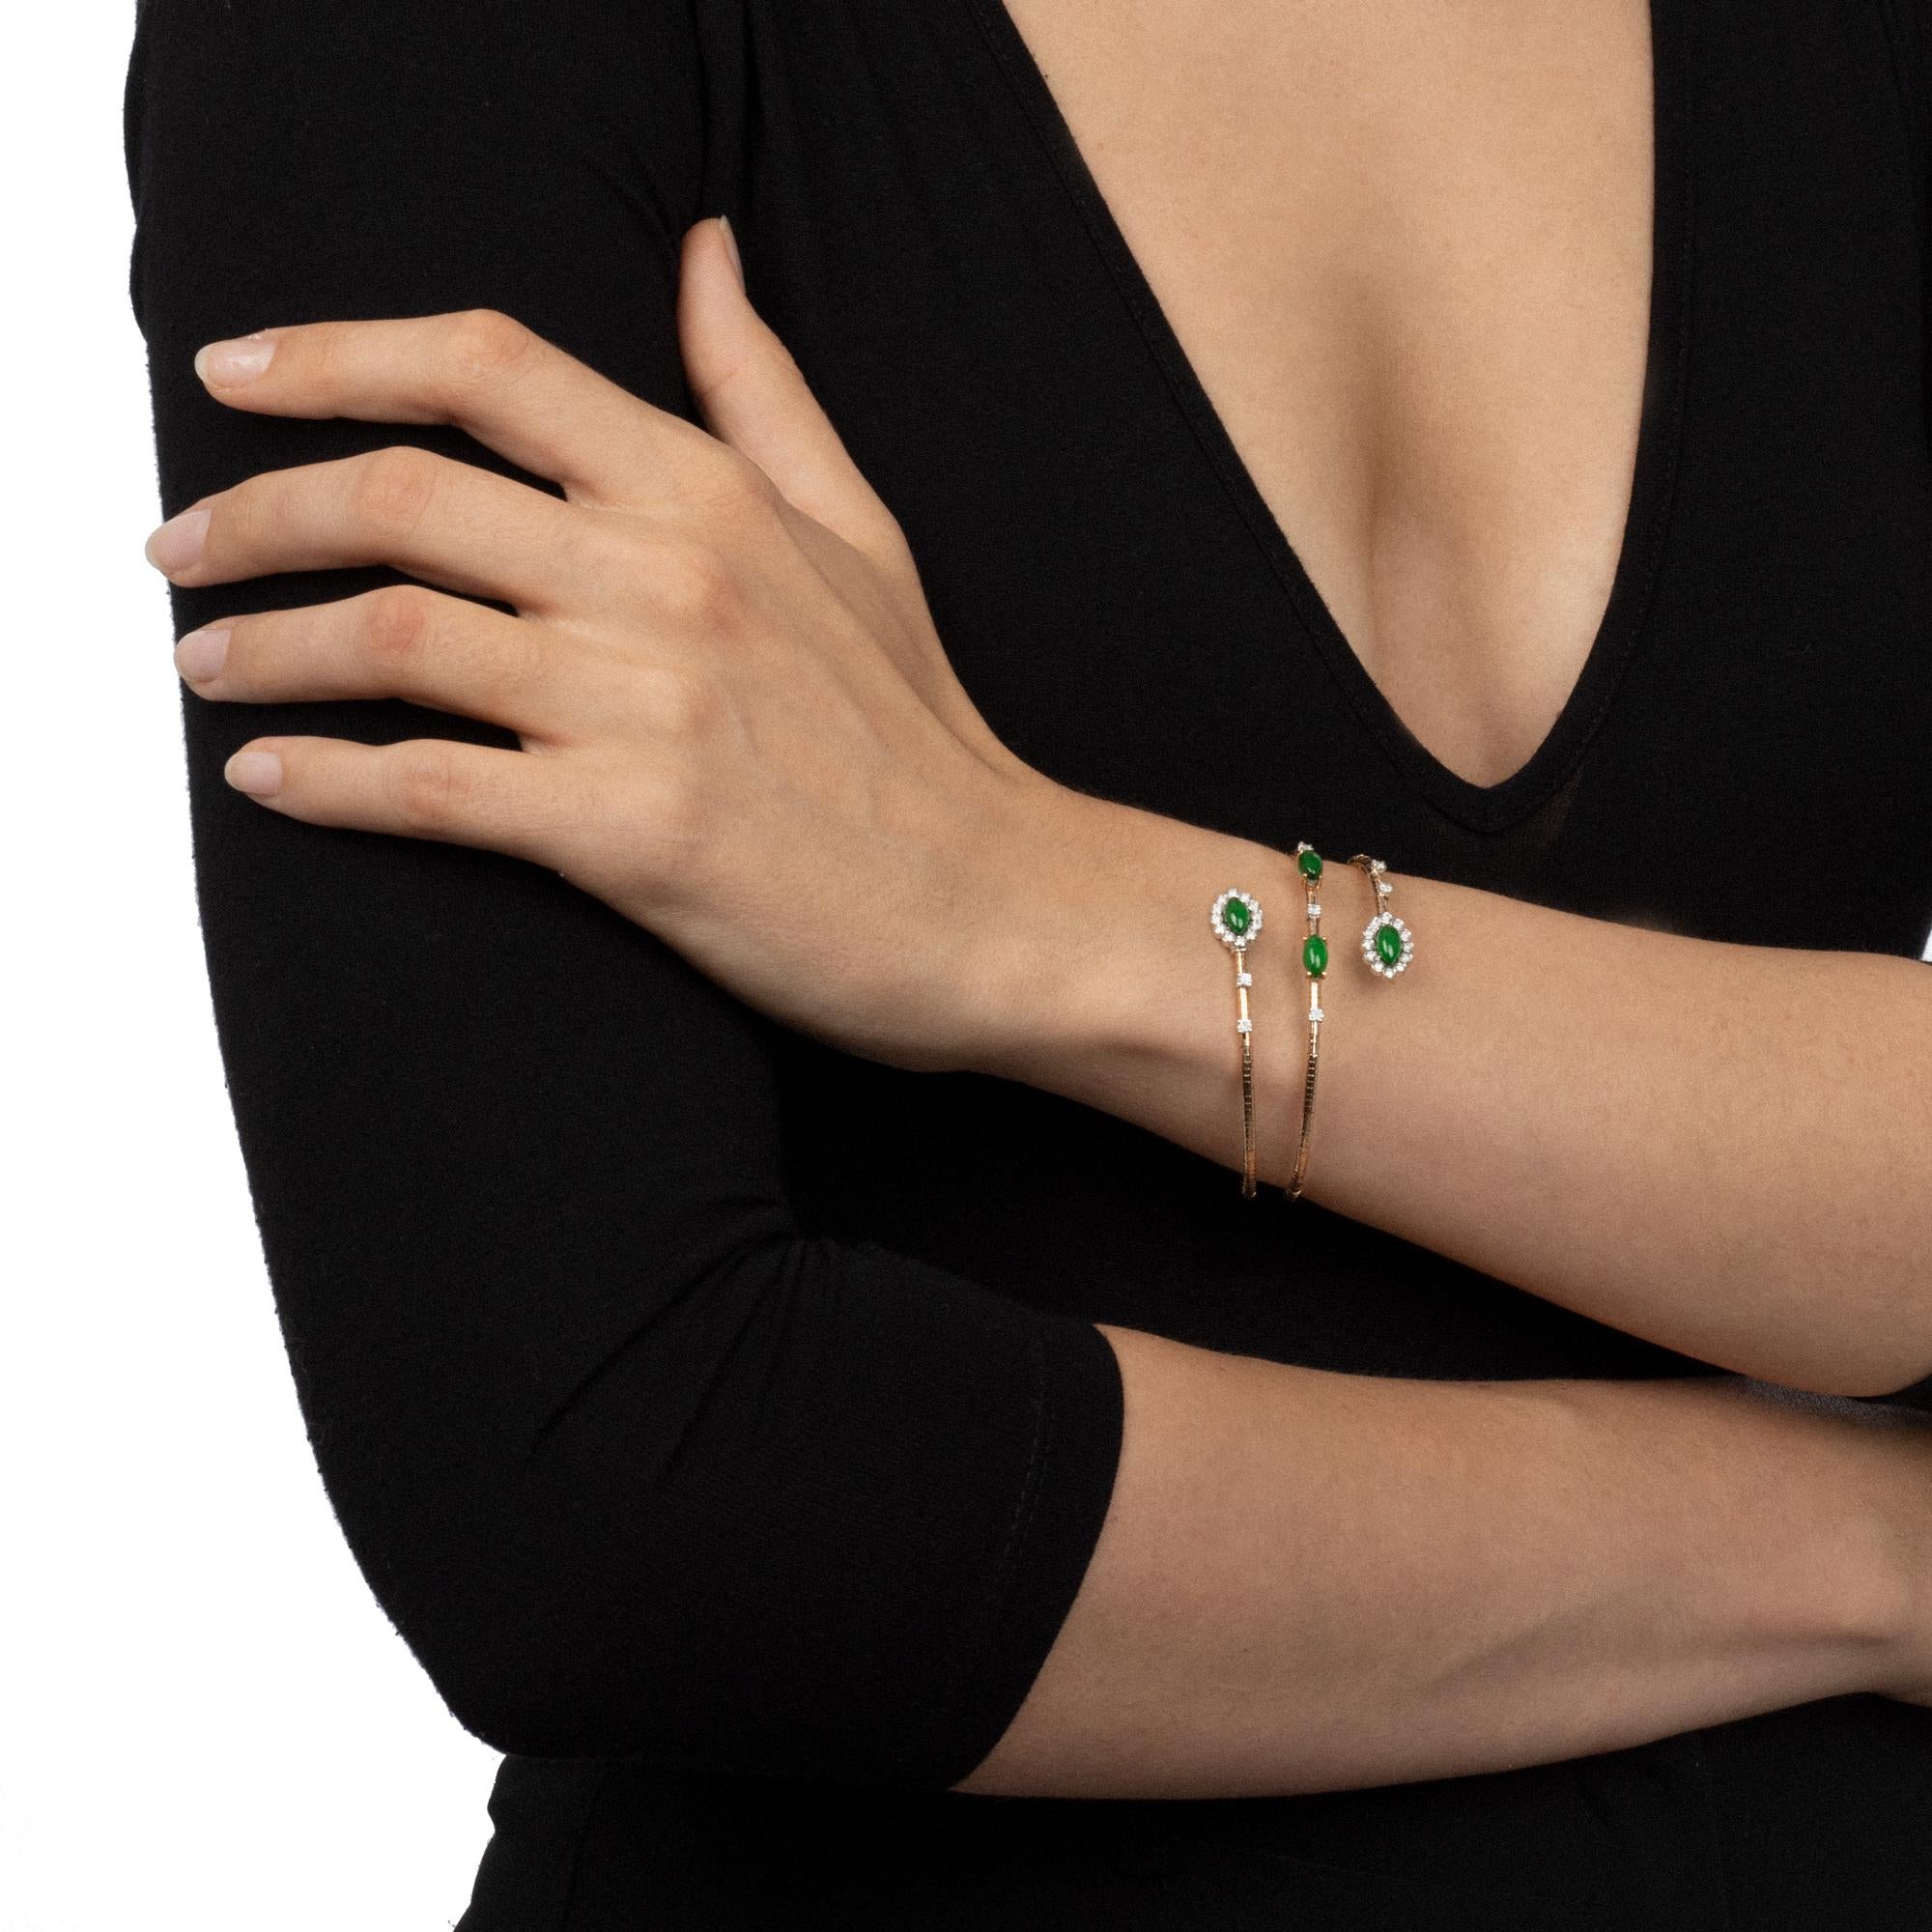 Die Spiralform dieses raffinierten Flexarmbandes mit Titankern ist so konzipiert, dass es sich sanft um das Handgelenk legt und das Licht einfängt und reflektiert. Die raffinierte Eleganz der grünen Aventurin-Edelsteine zelebriert die weibliche